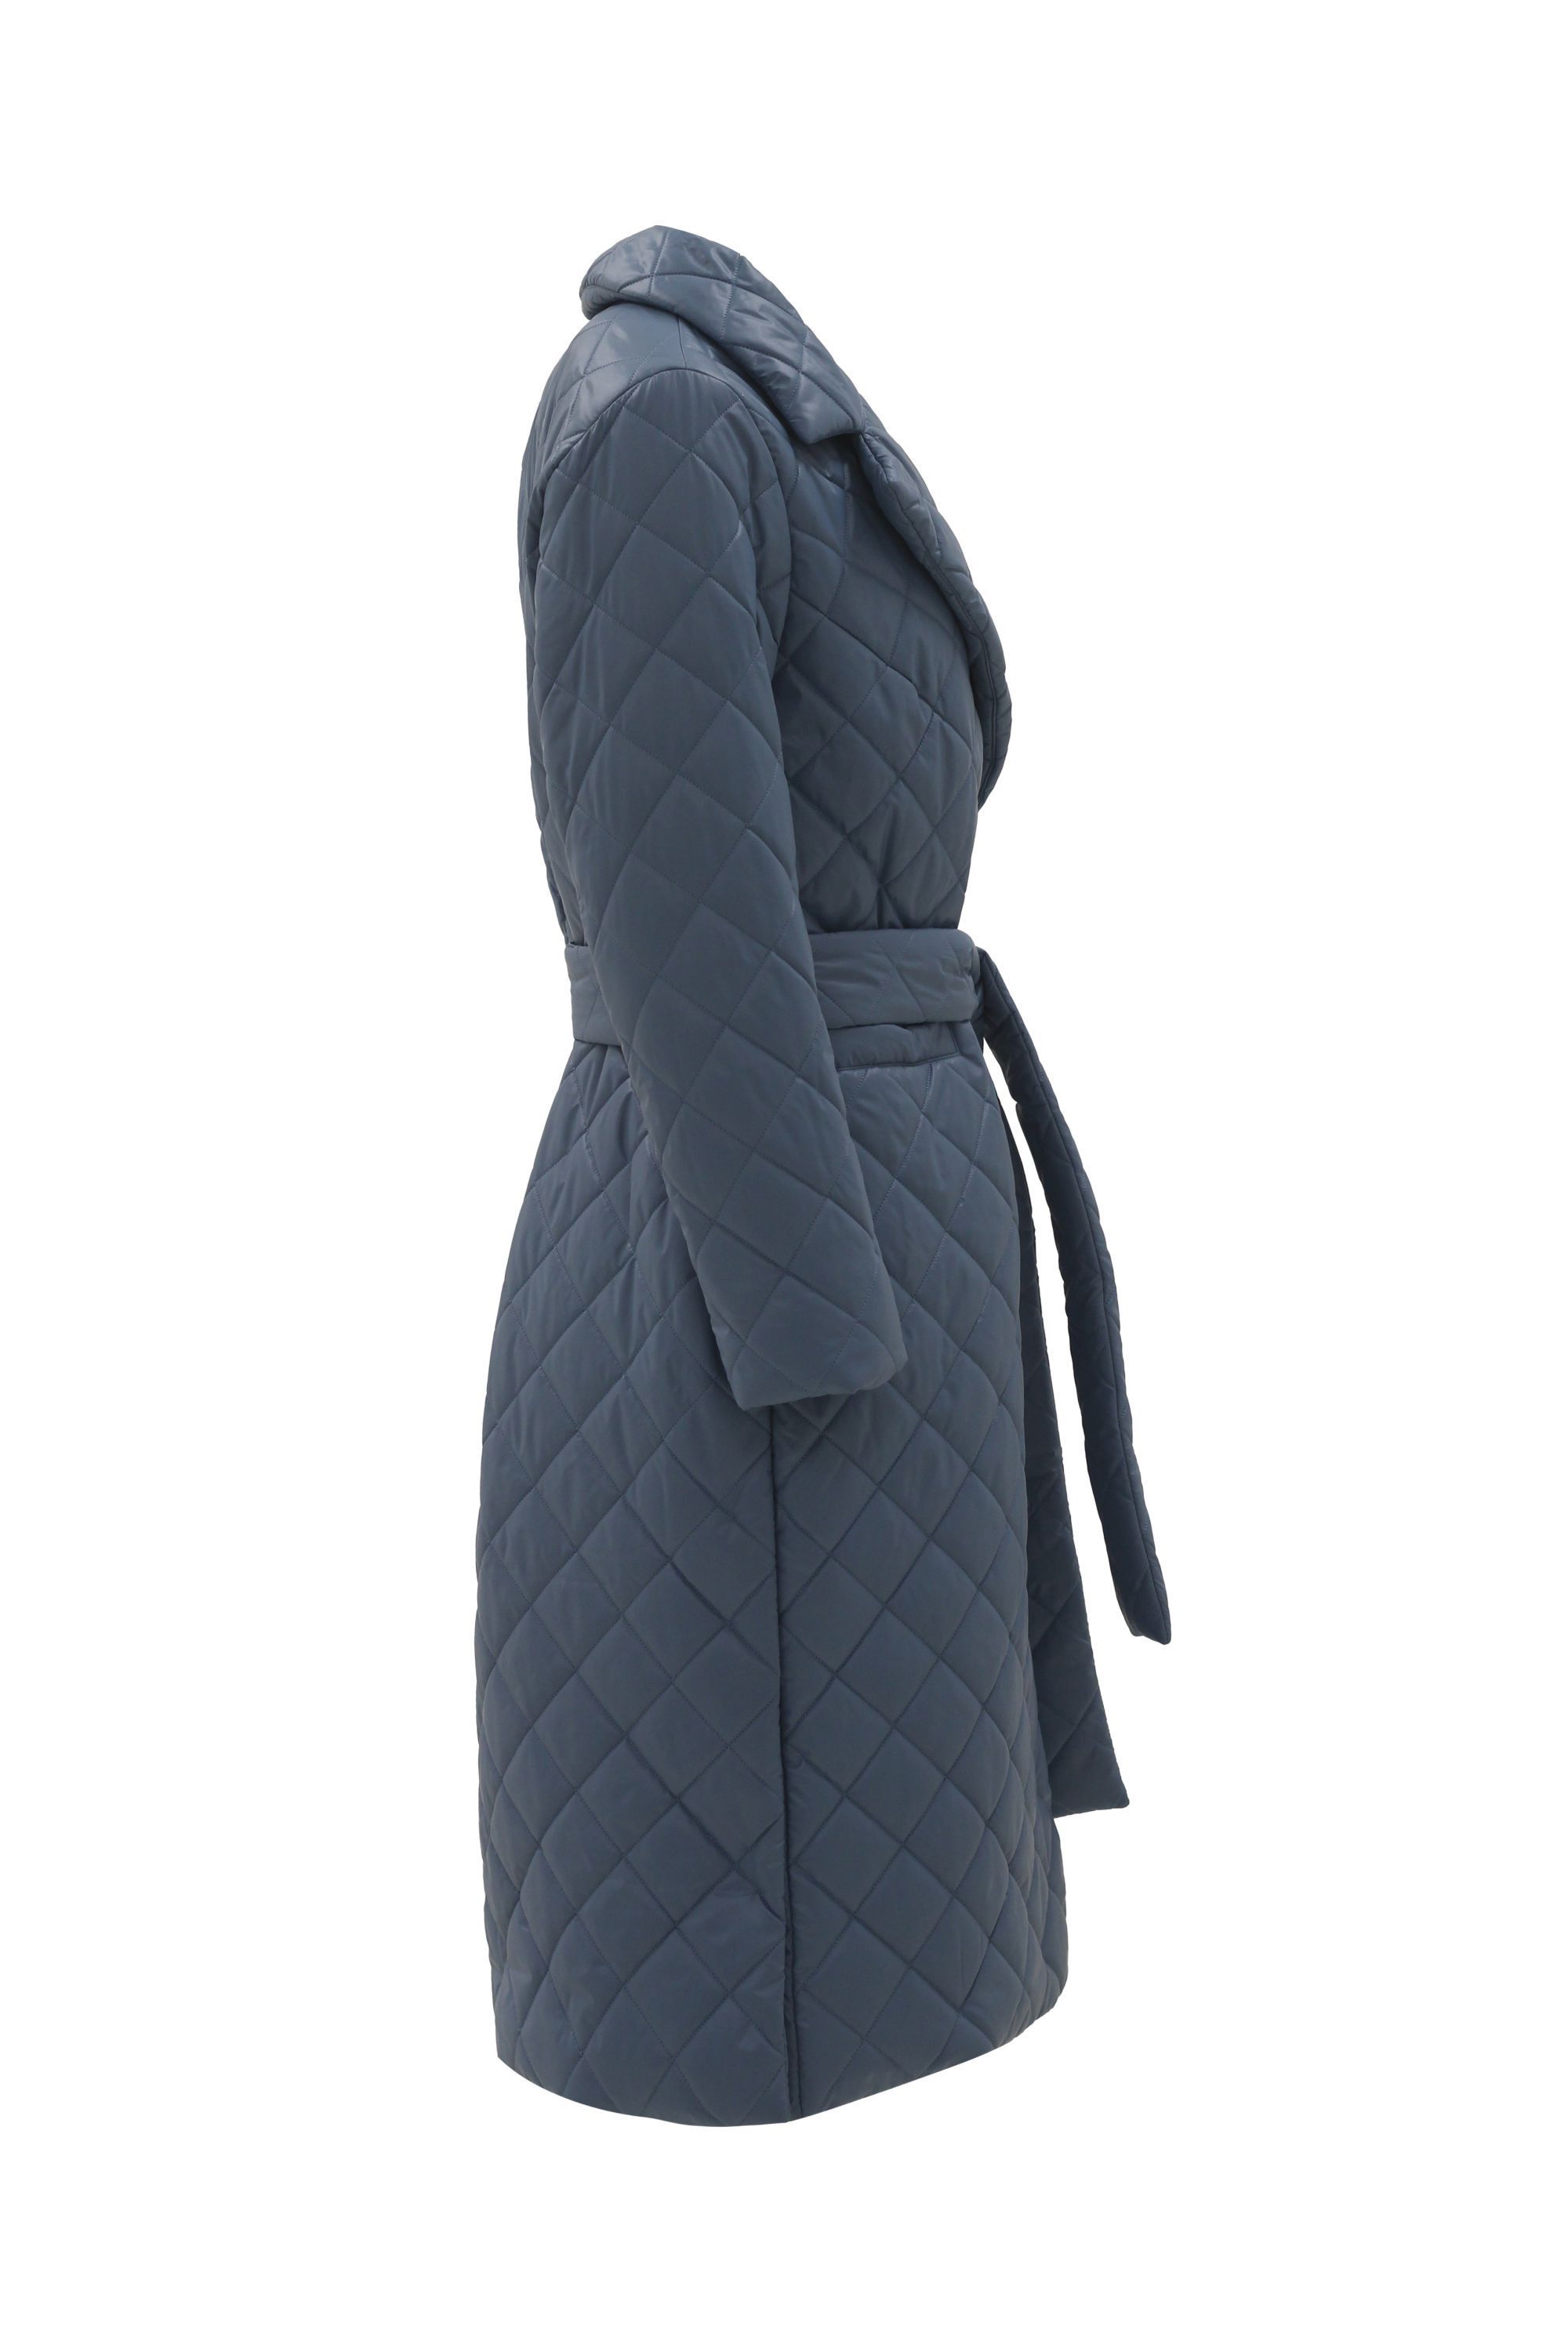 Пальто женское плащевое утепленное 5-12115-1. Фото 2.